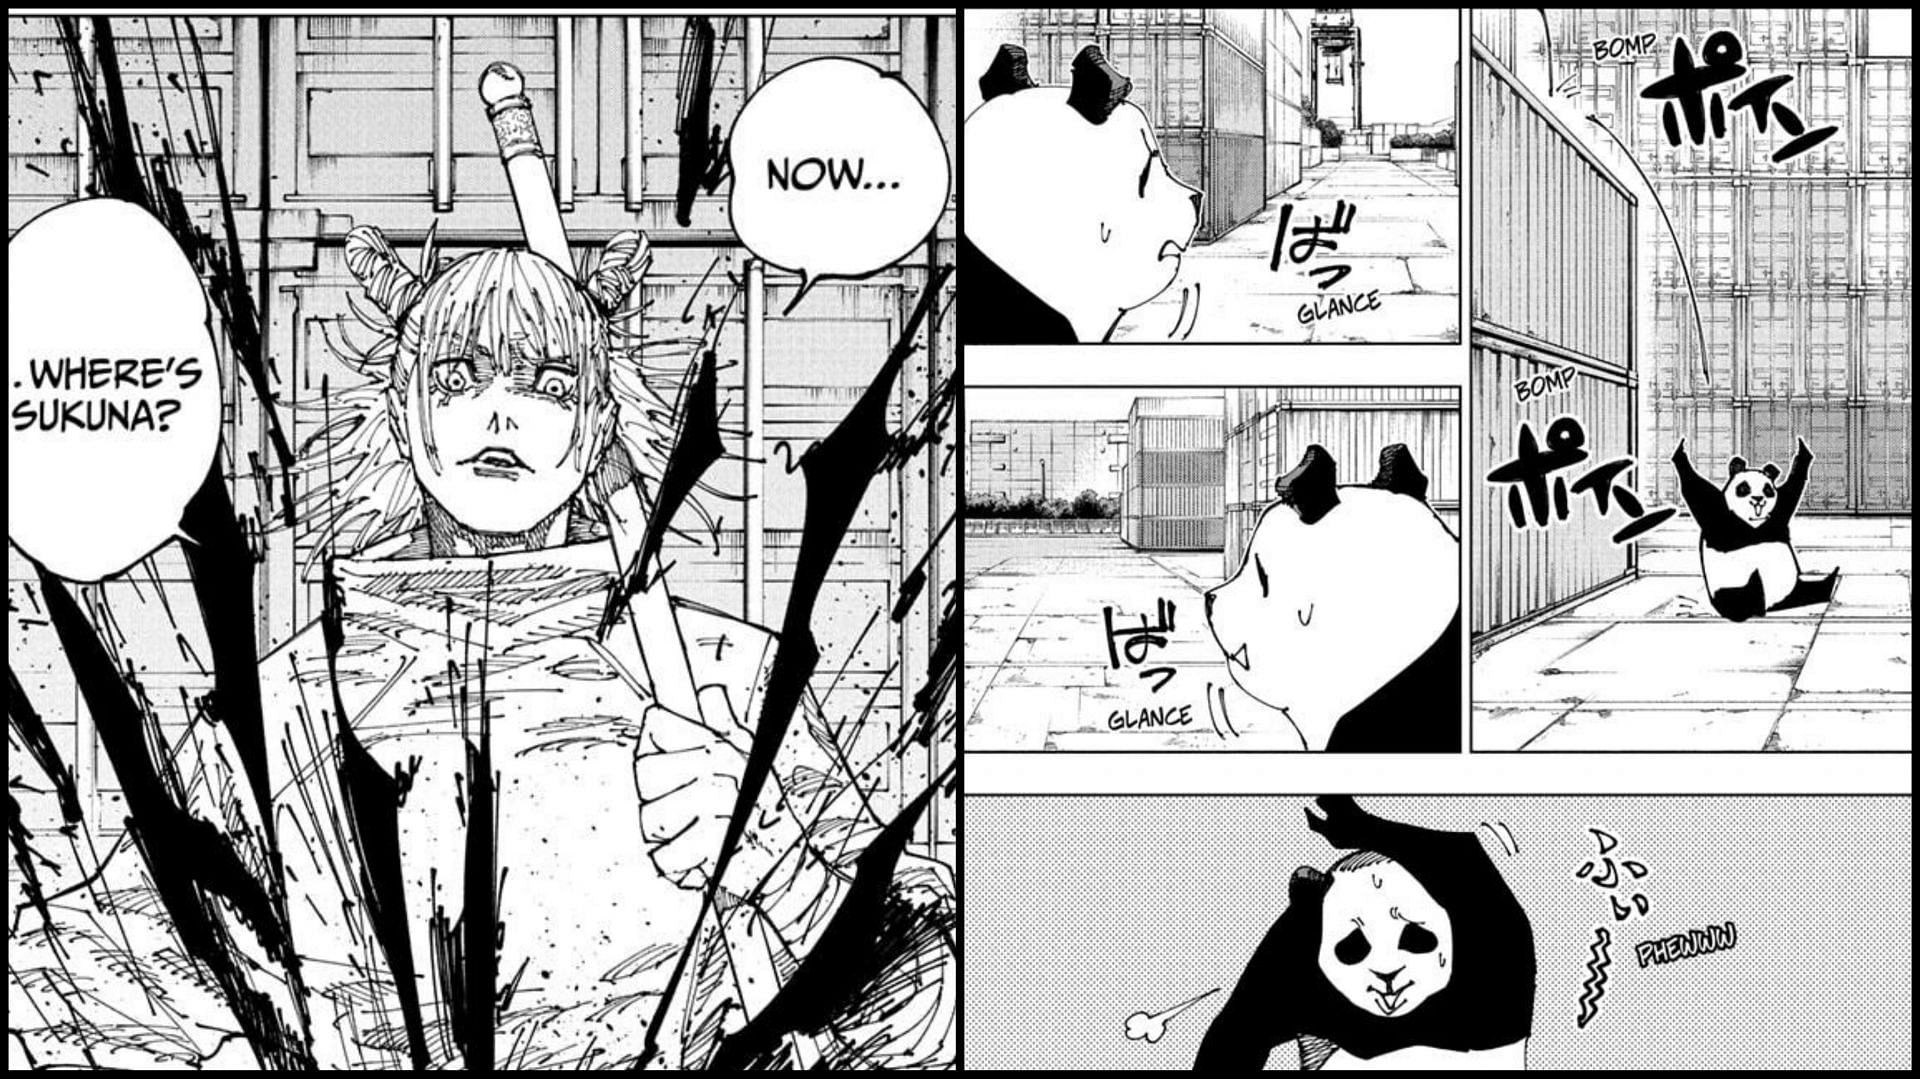 Panda and Kashimo in chapter 184 (Image via Shueisha)